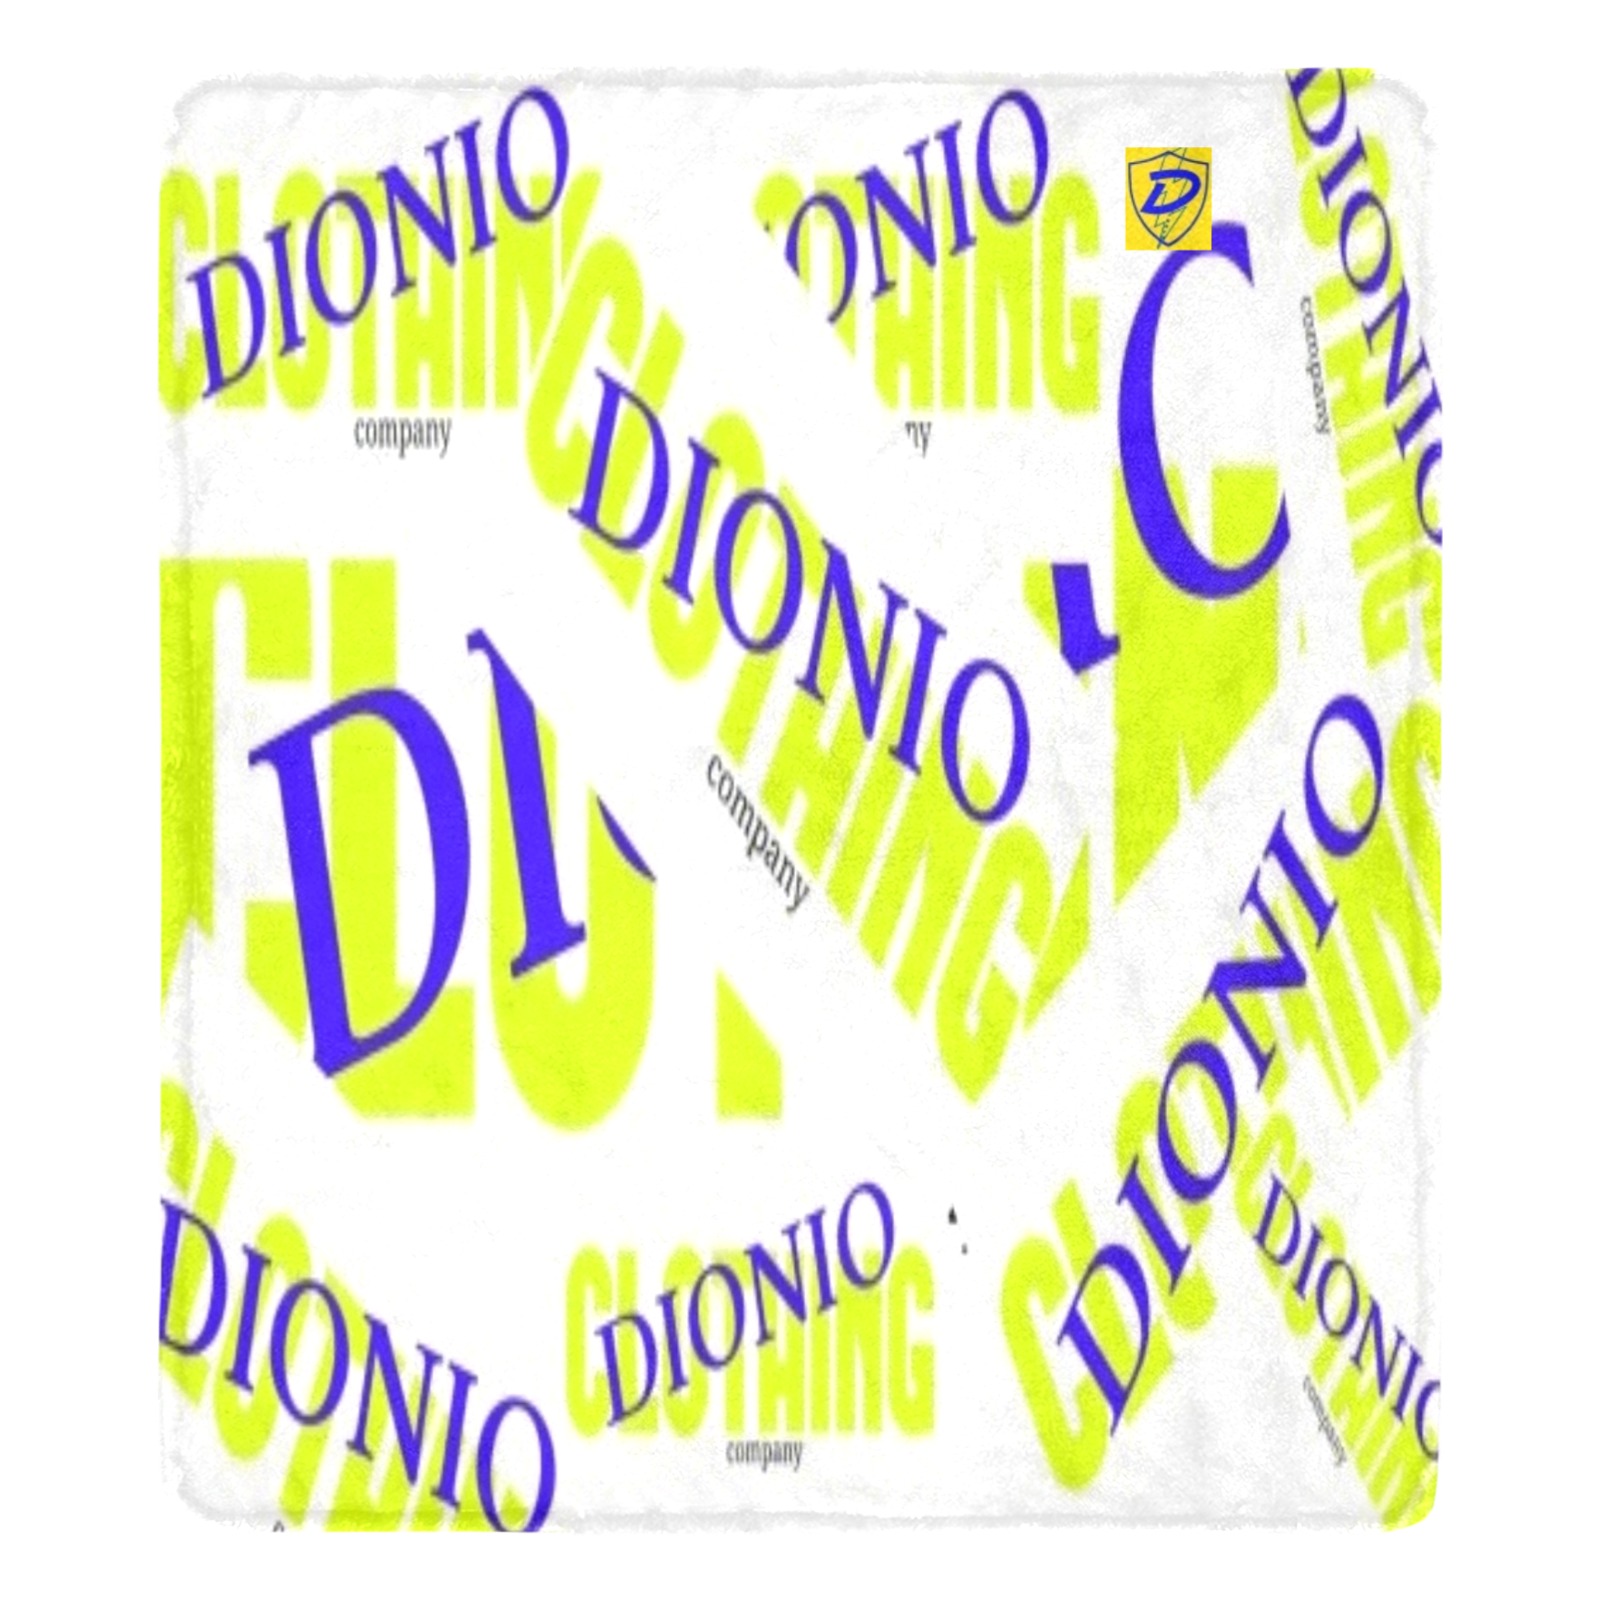 DIONIO - Dionio Company Logos Ultra soft Micro Fleece Blanket 70 X 80 Ultra-Soft Micro Fleece Blanket 70''x80''